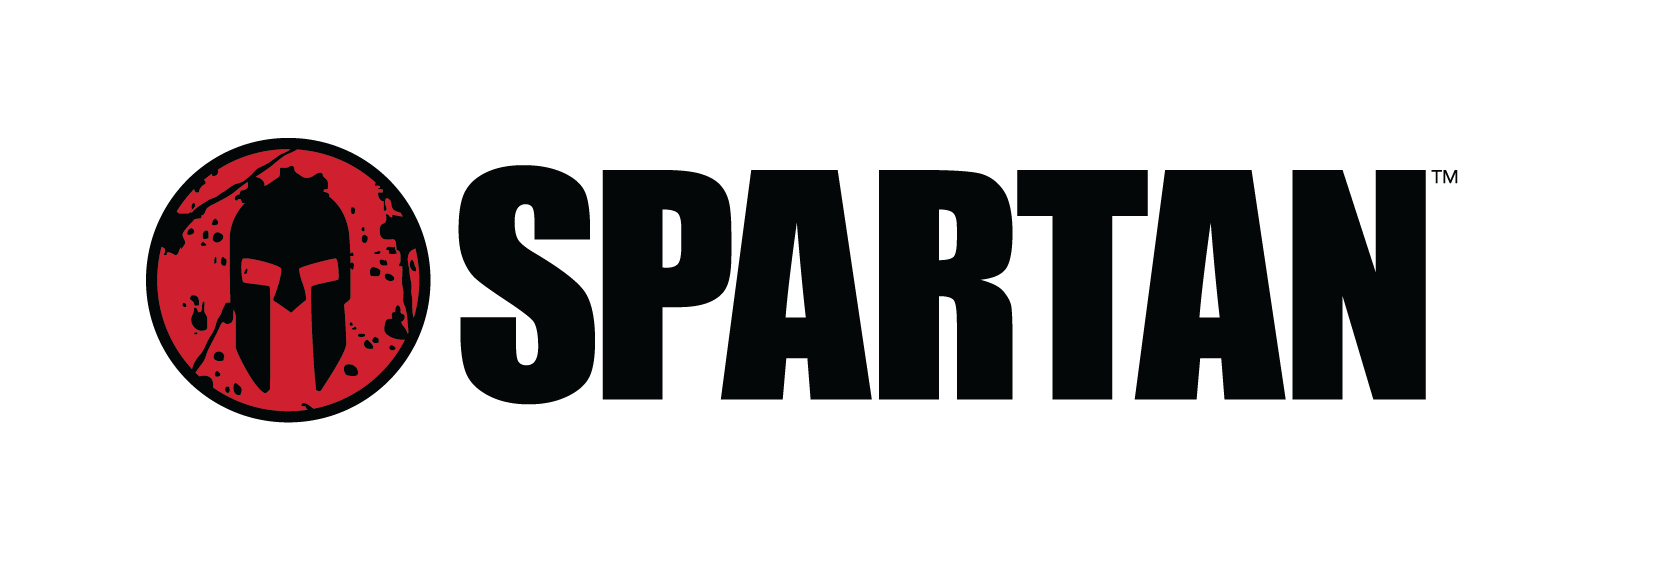 spartan clipart wins